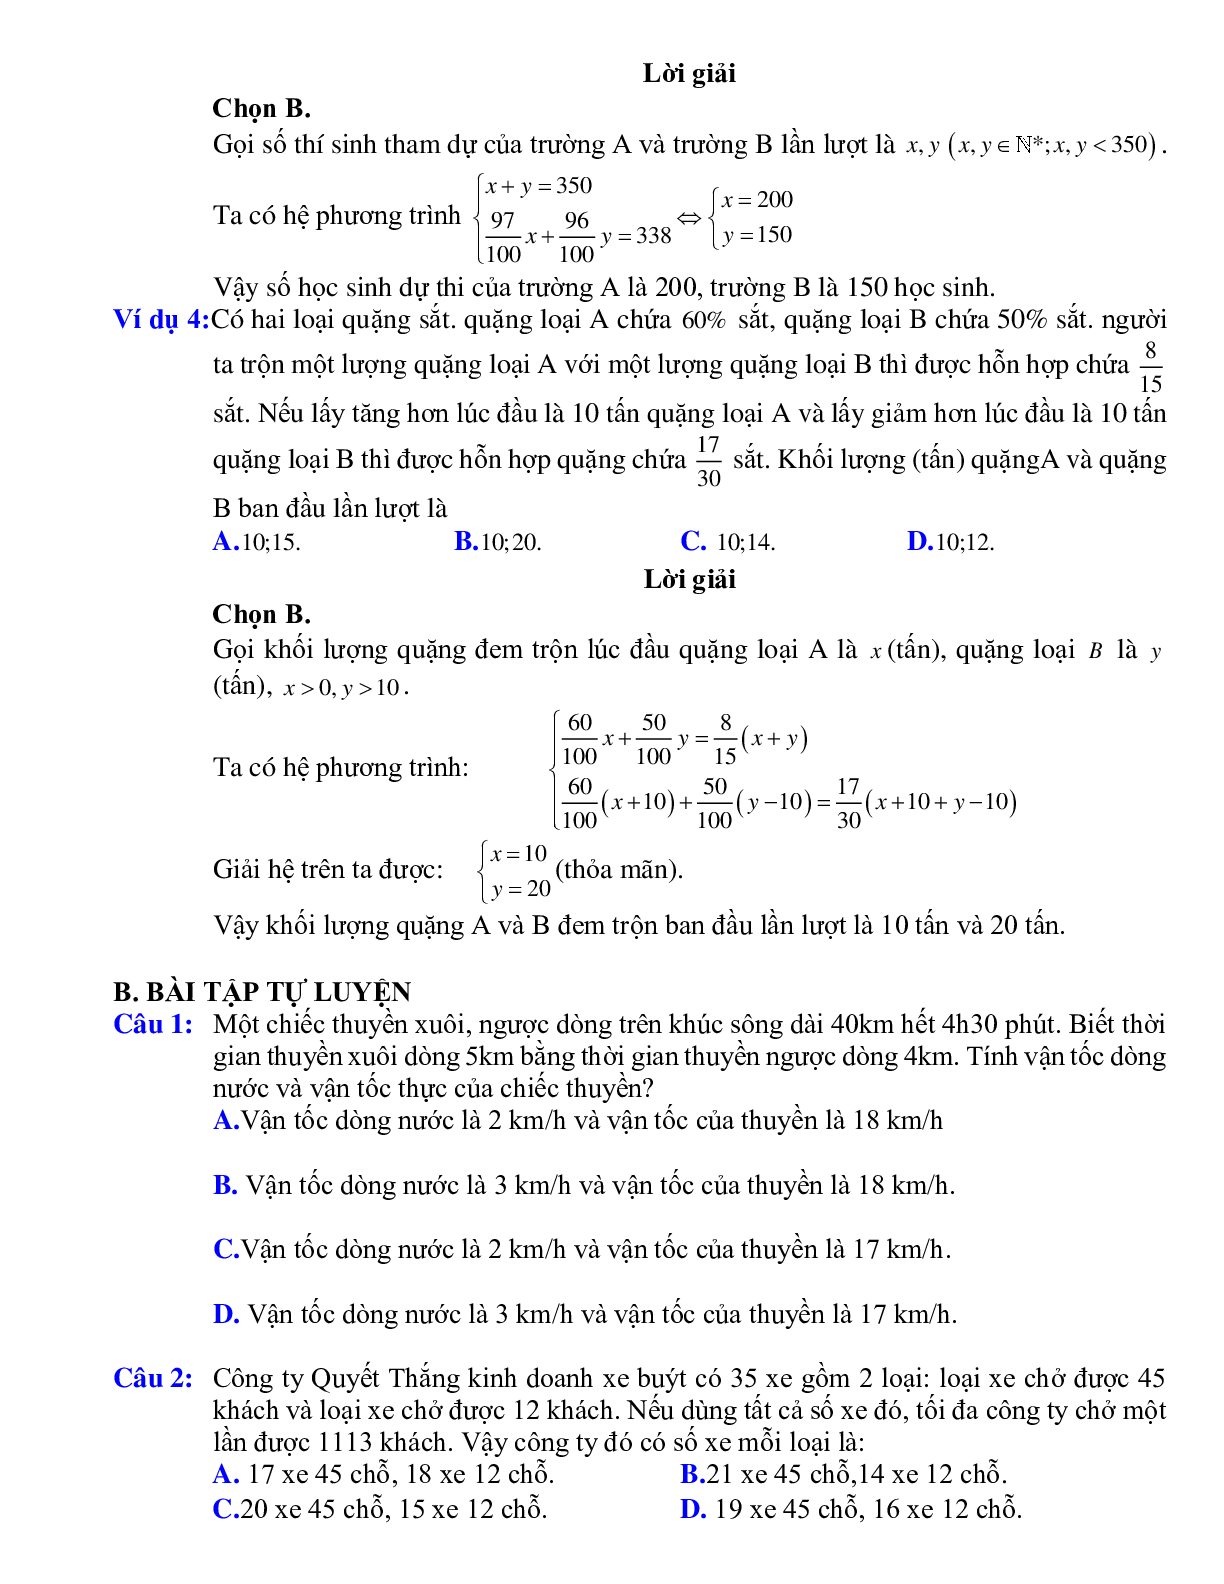 Giải bài toán bằng cách hệ lập phương trình hai ẩn (trang 2)